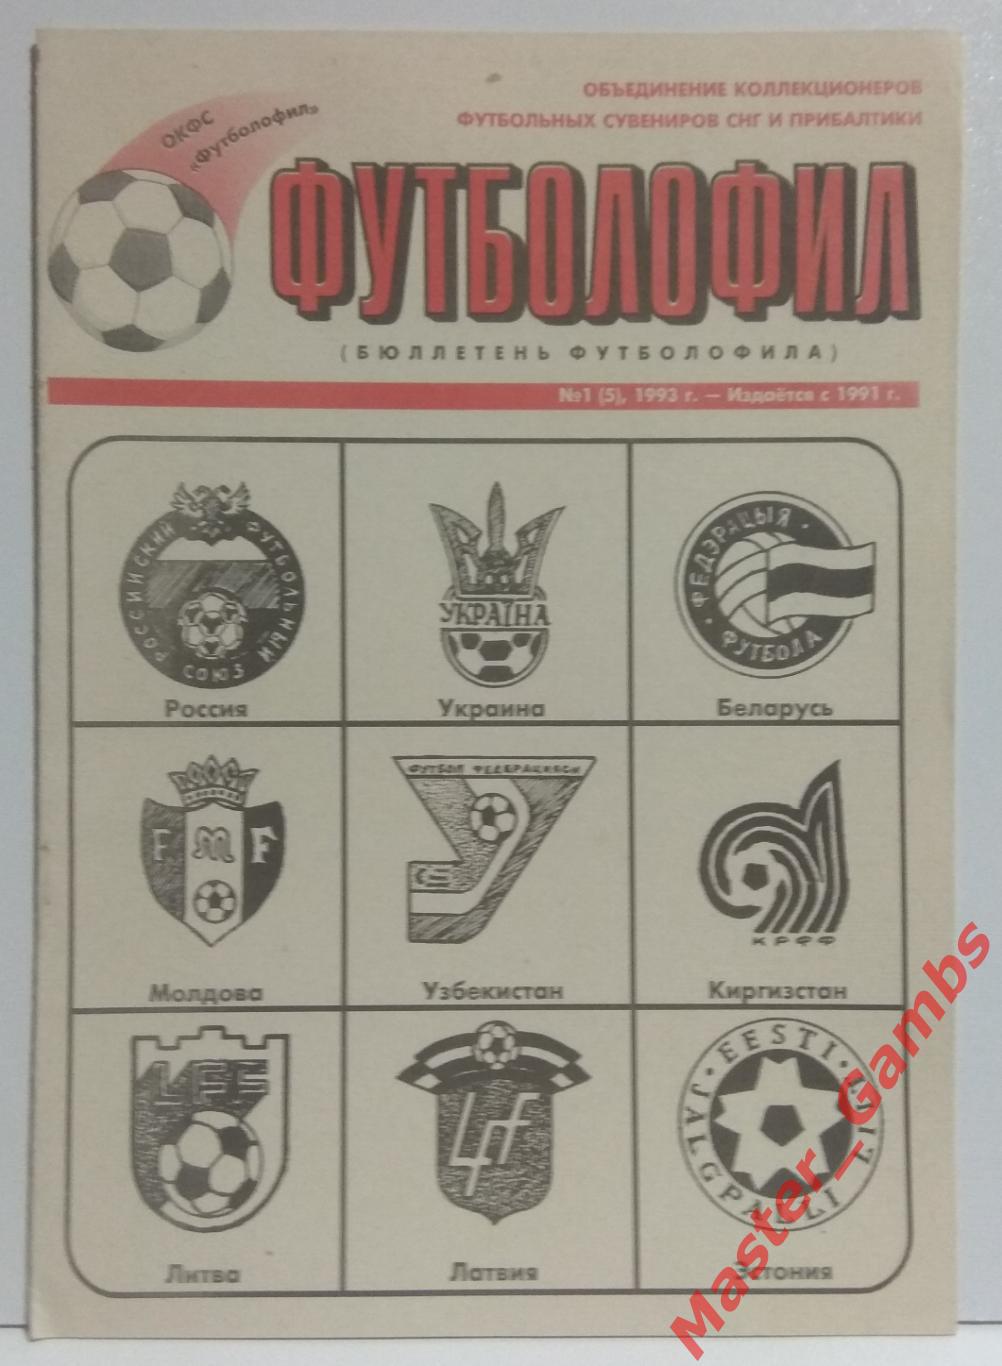 Коломиец - Футболофил (Бюллетень футболофила) #1(5) 1993*